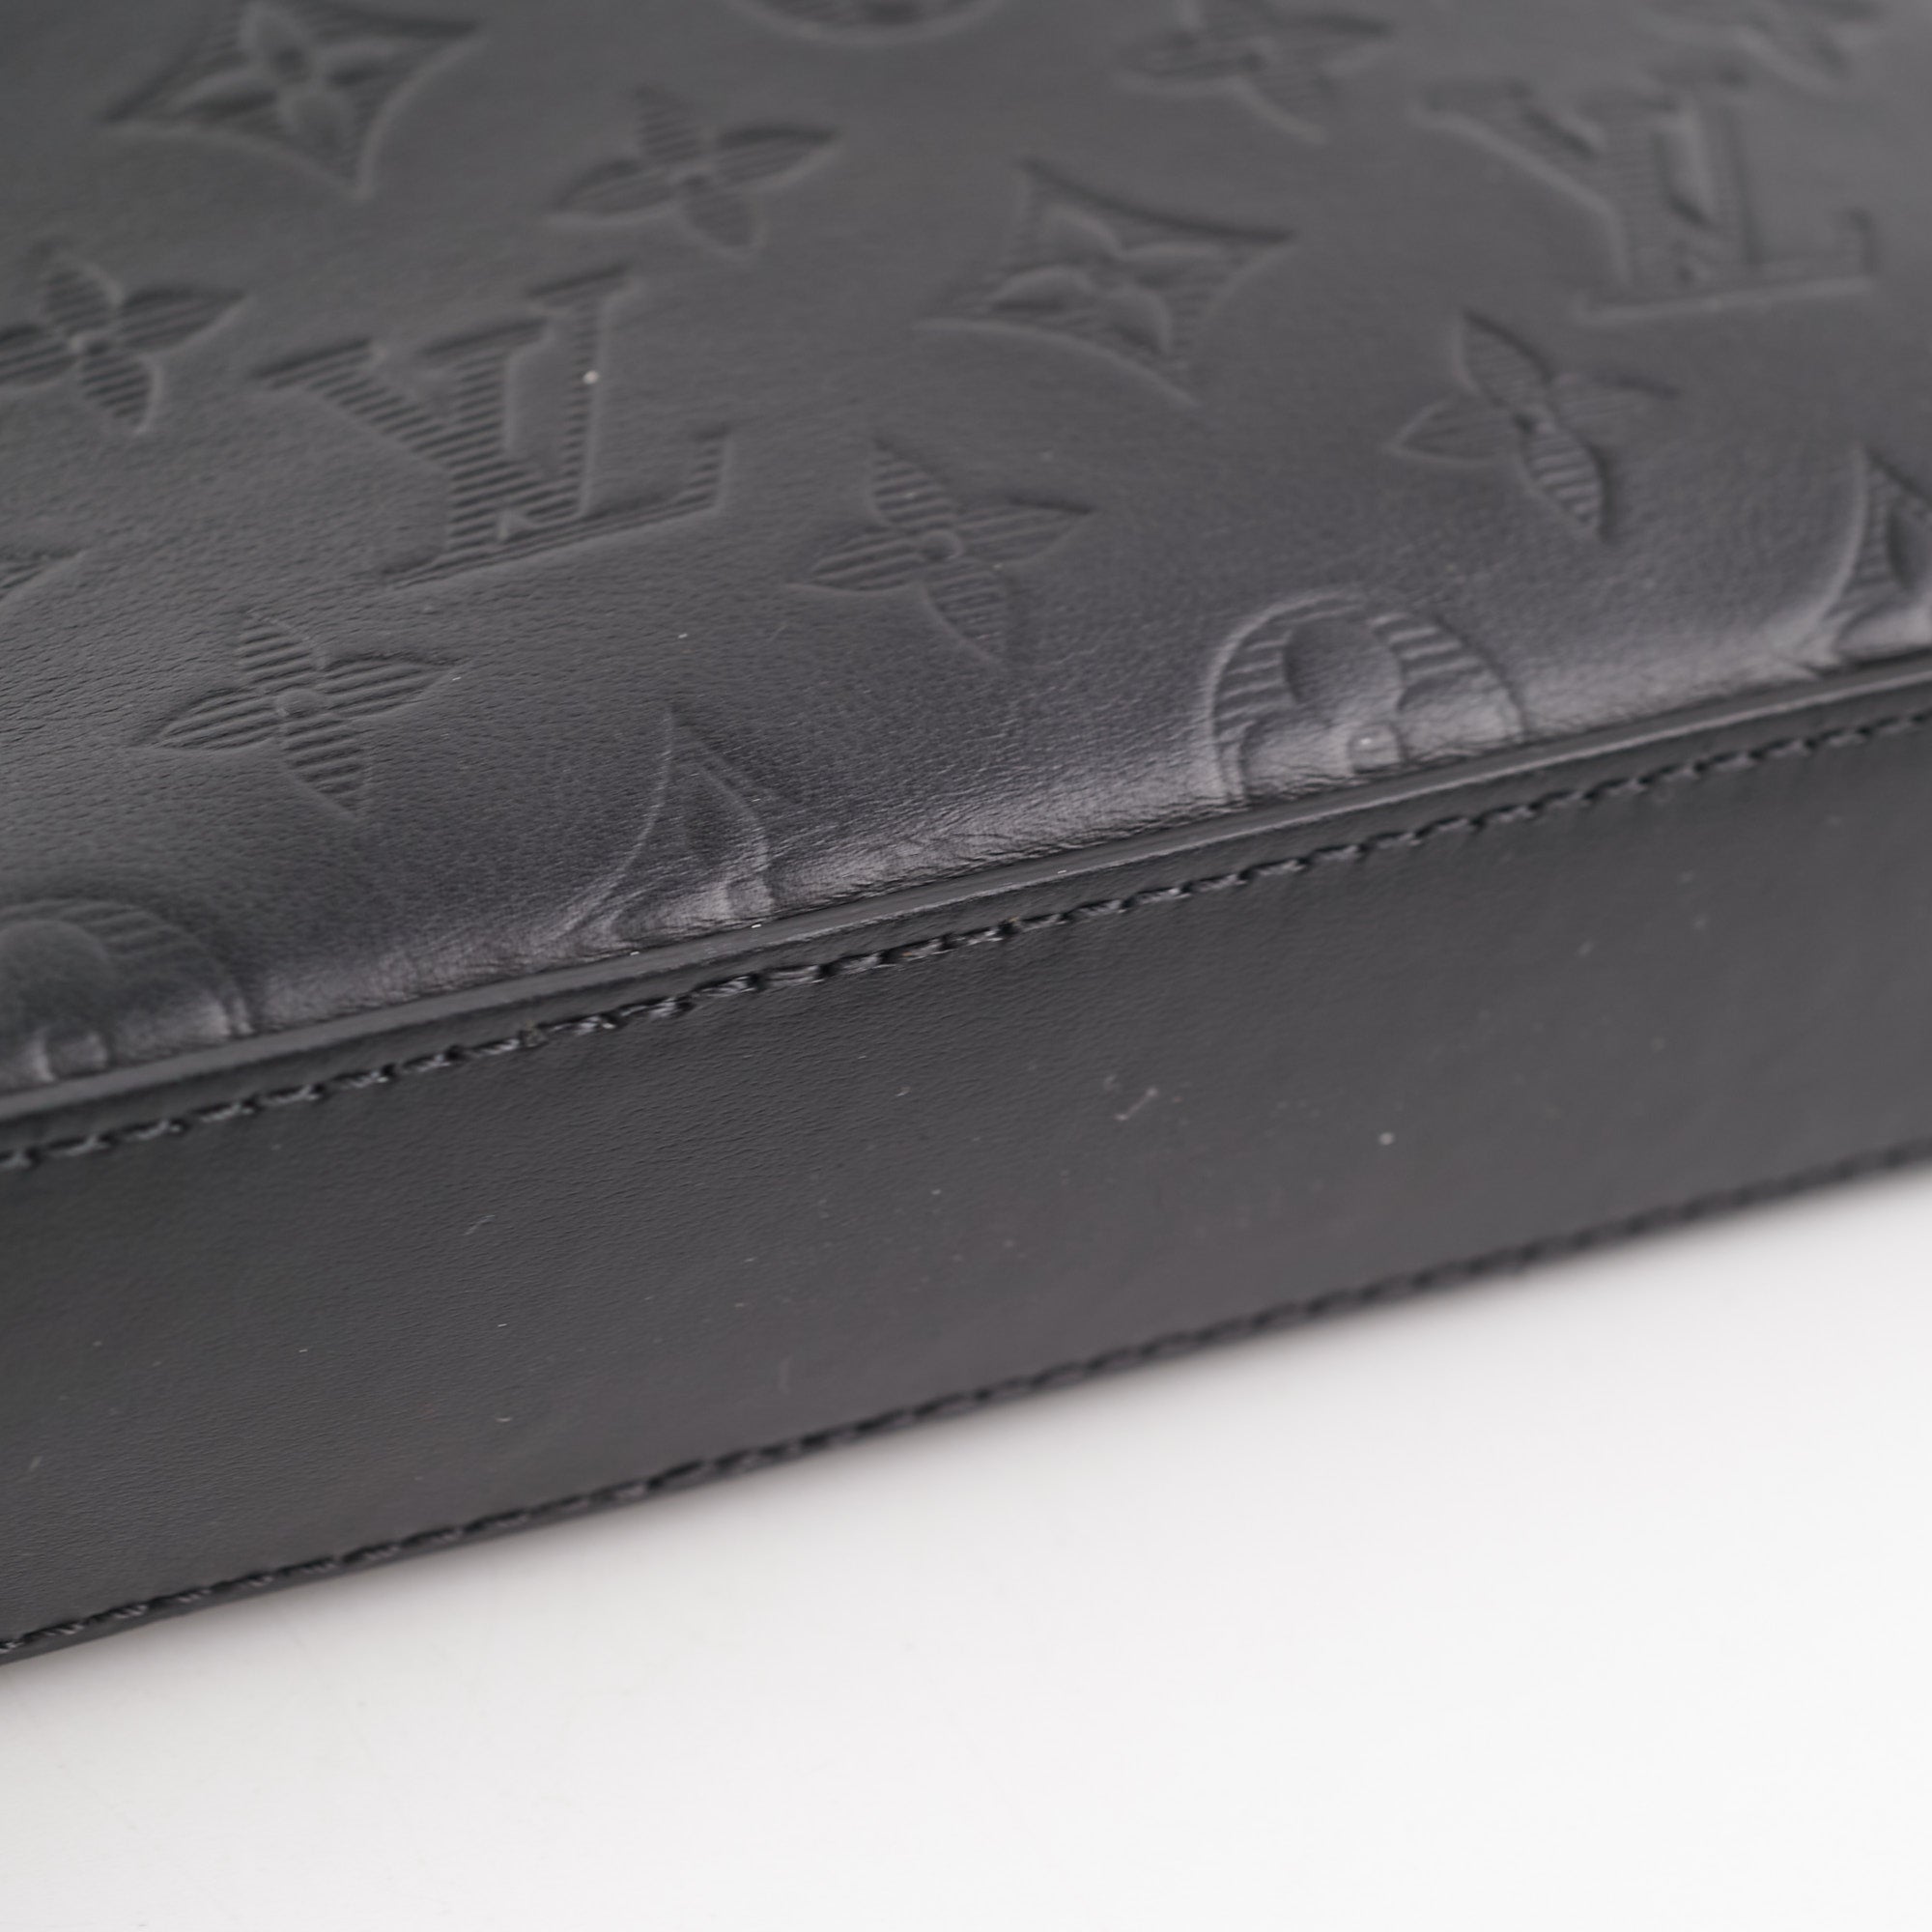 ITEM 30 - Louis Vuitton Messenger Black Empreinte Leather - THE PURSE AFFAIR